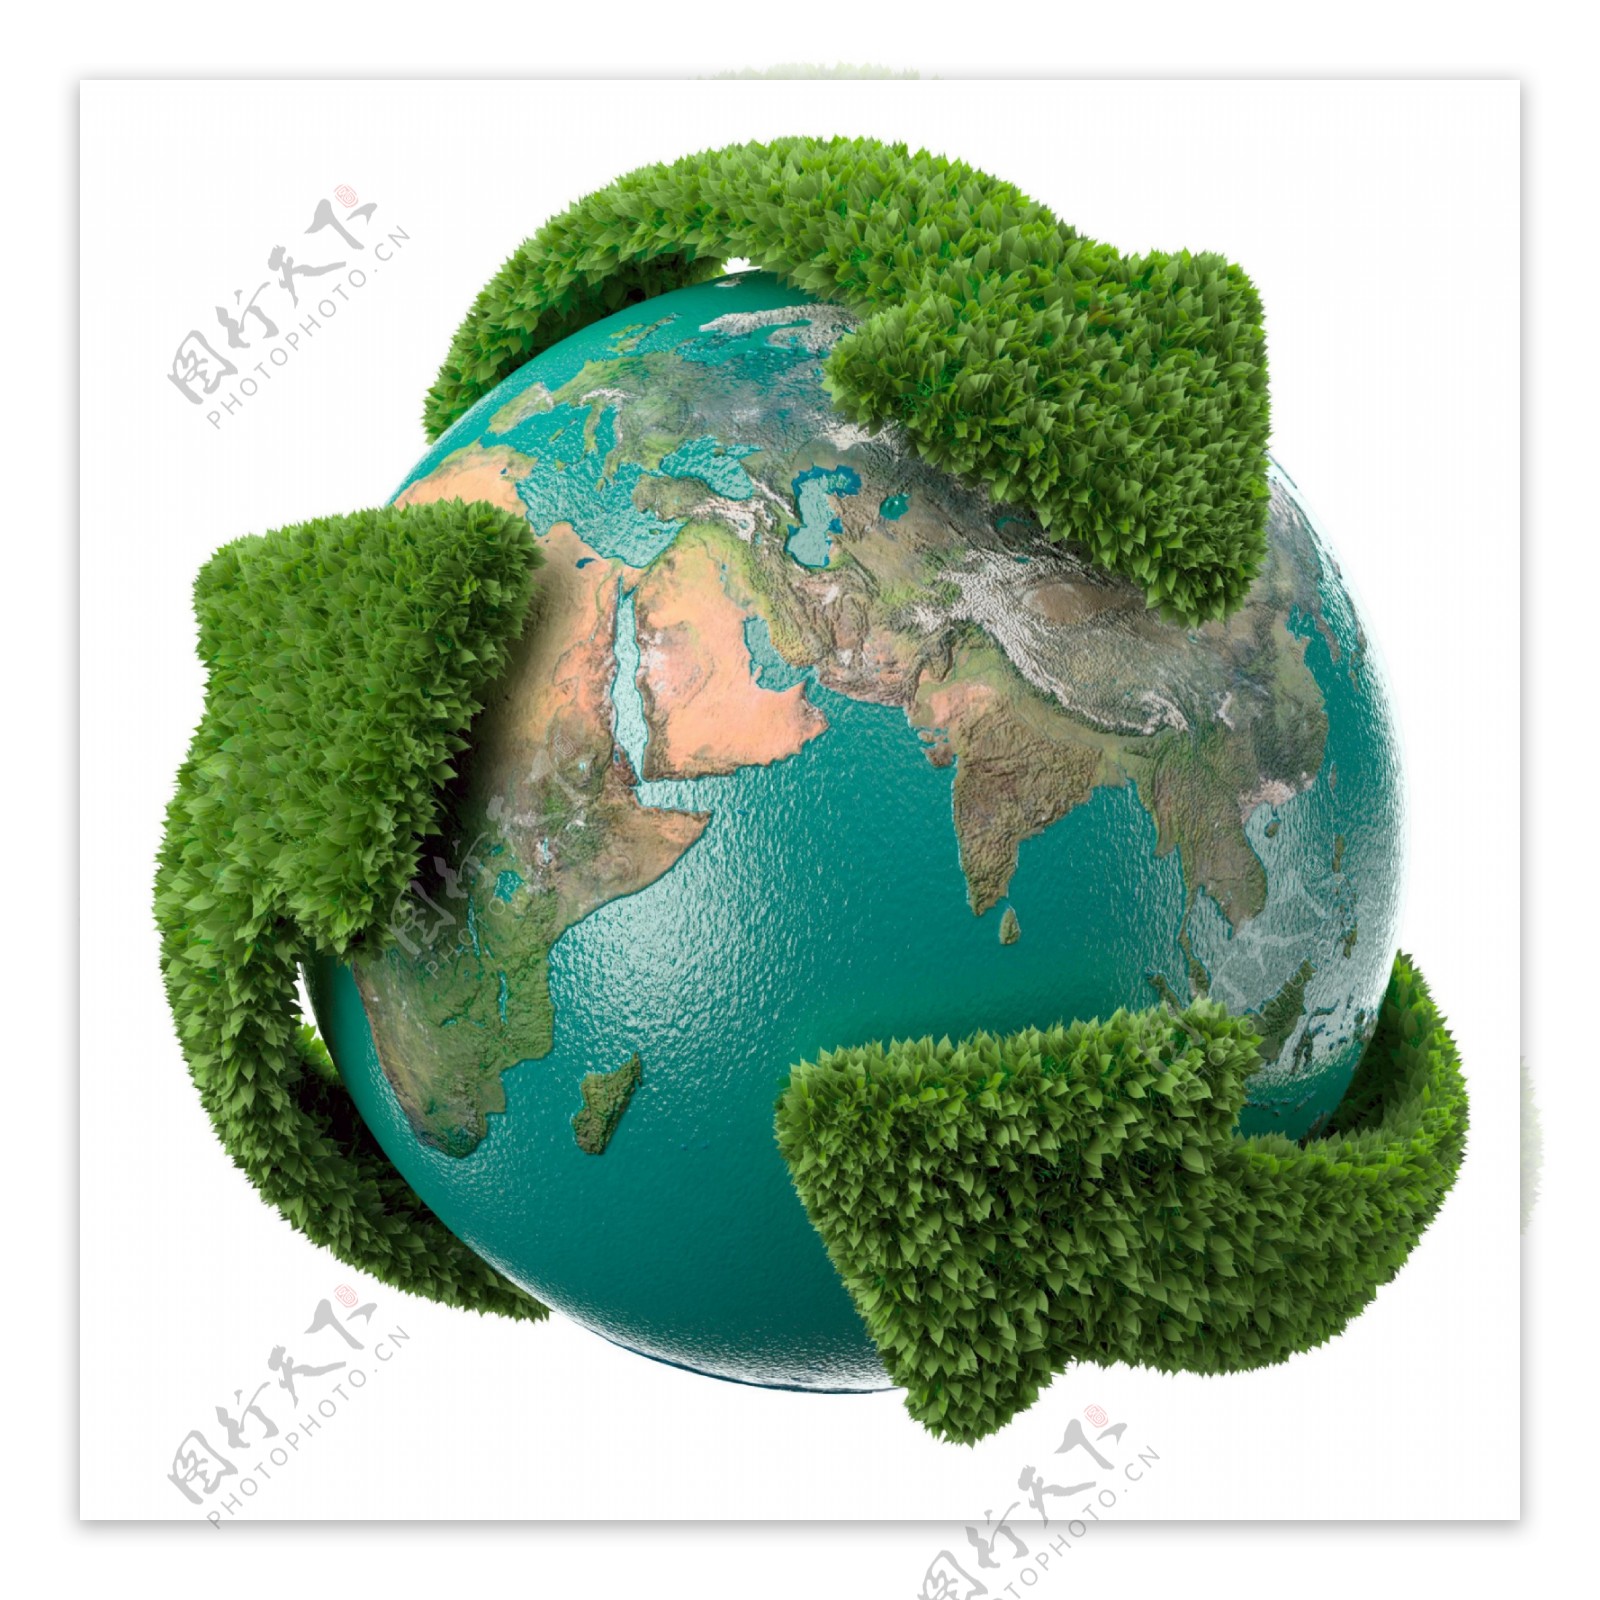 环境保护环境宣传绿色环保